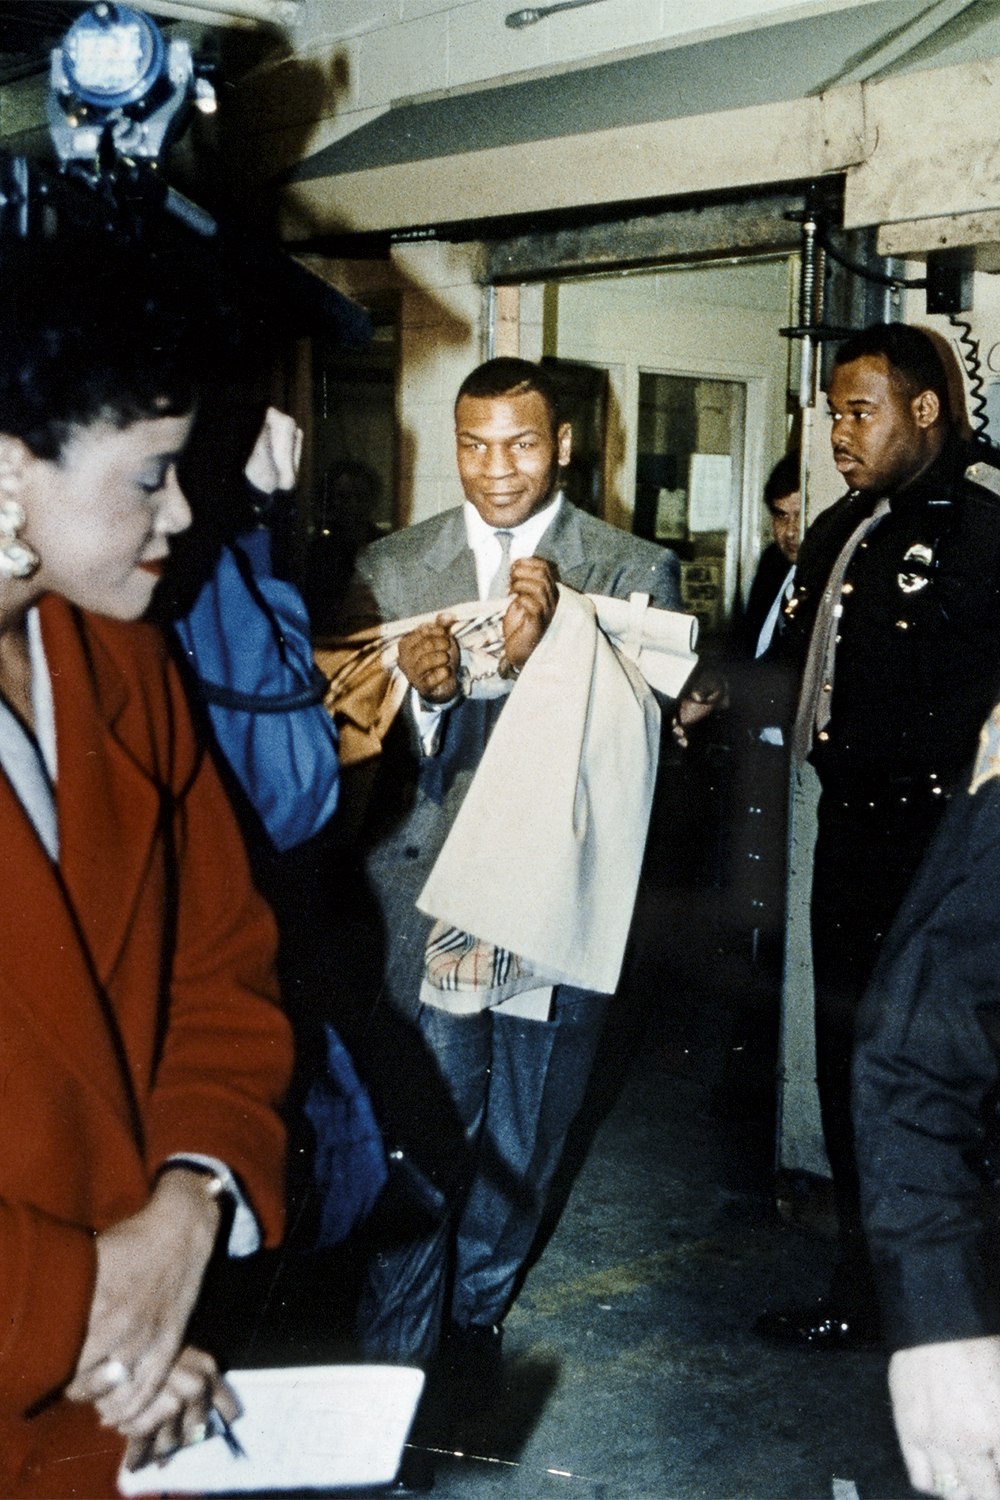 DE NOVO - Tyson preso, em 1992, por estupro: trinta anos depois, há outra denúncia de agressão contra ele -